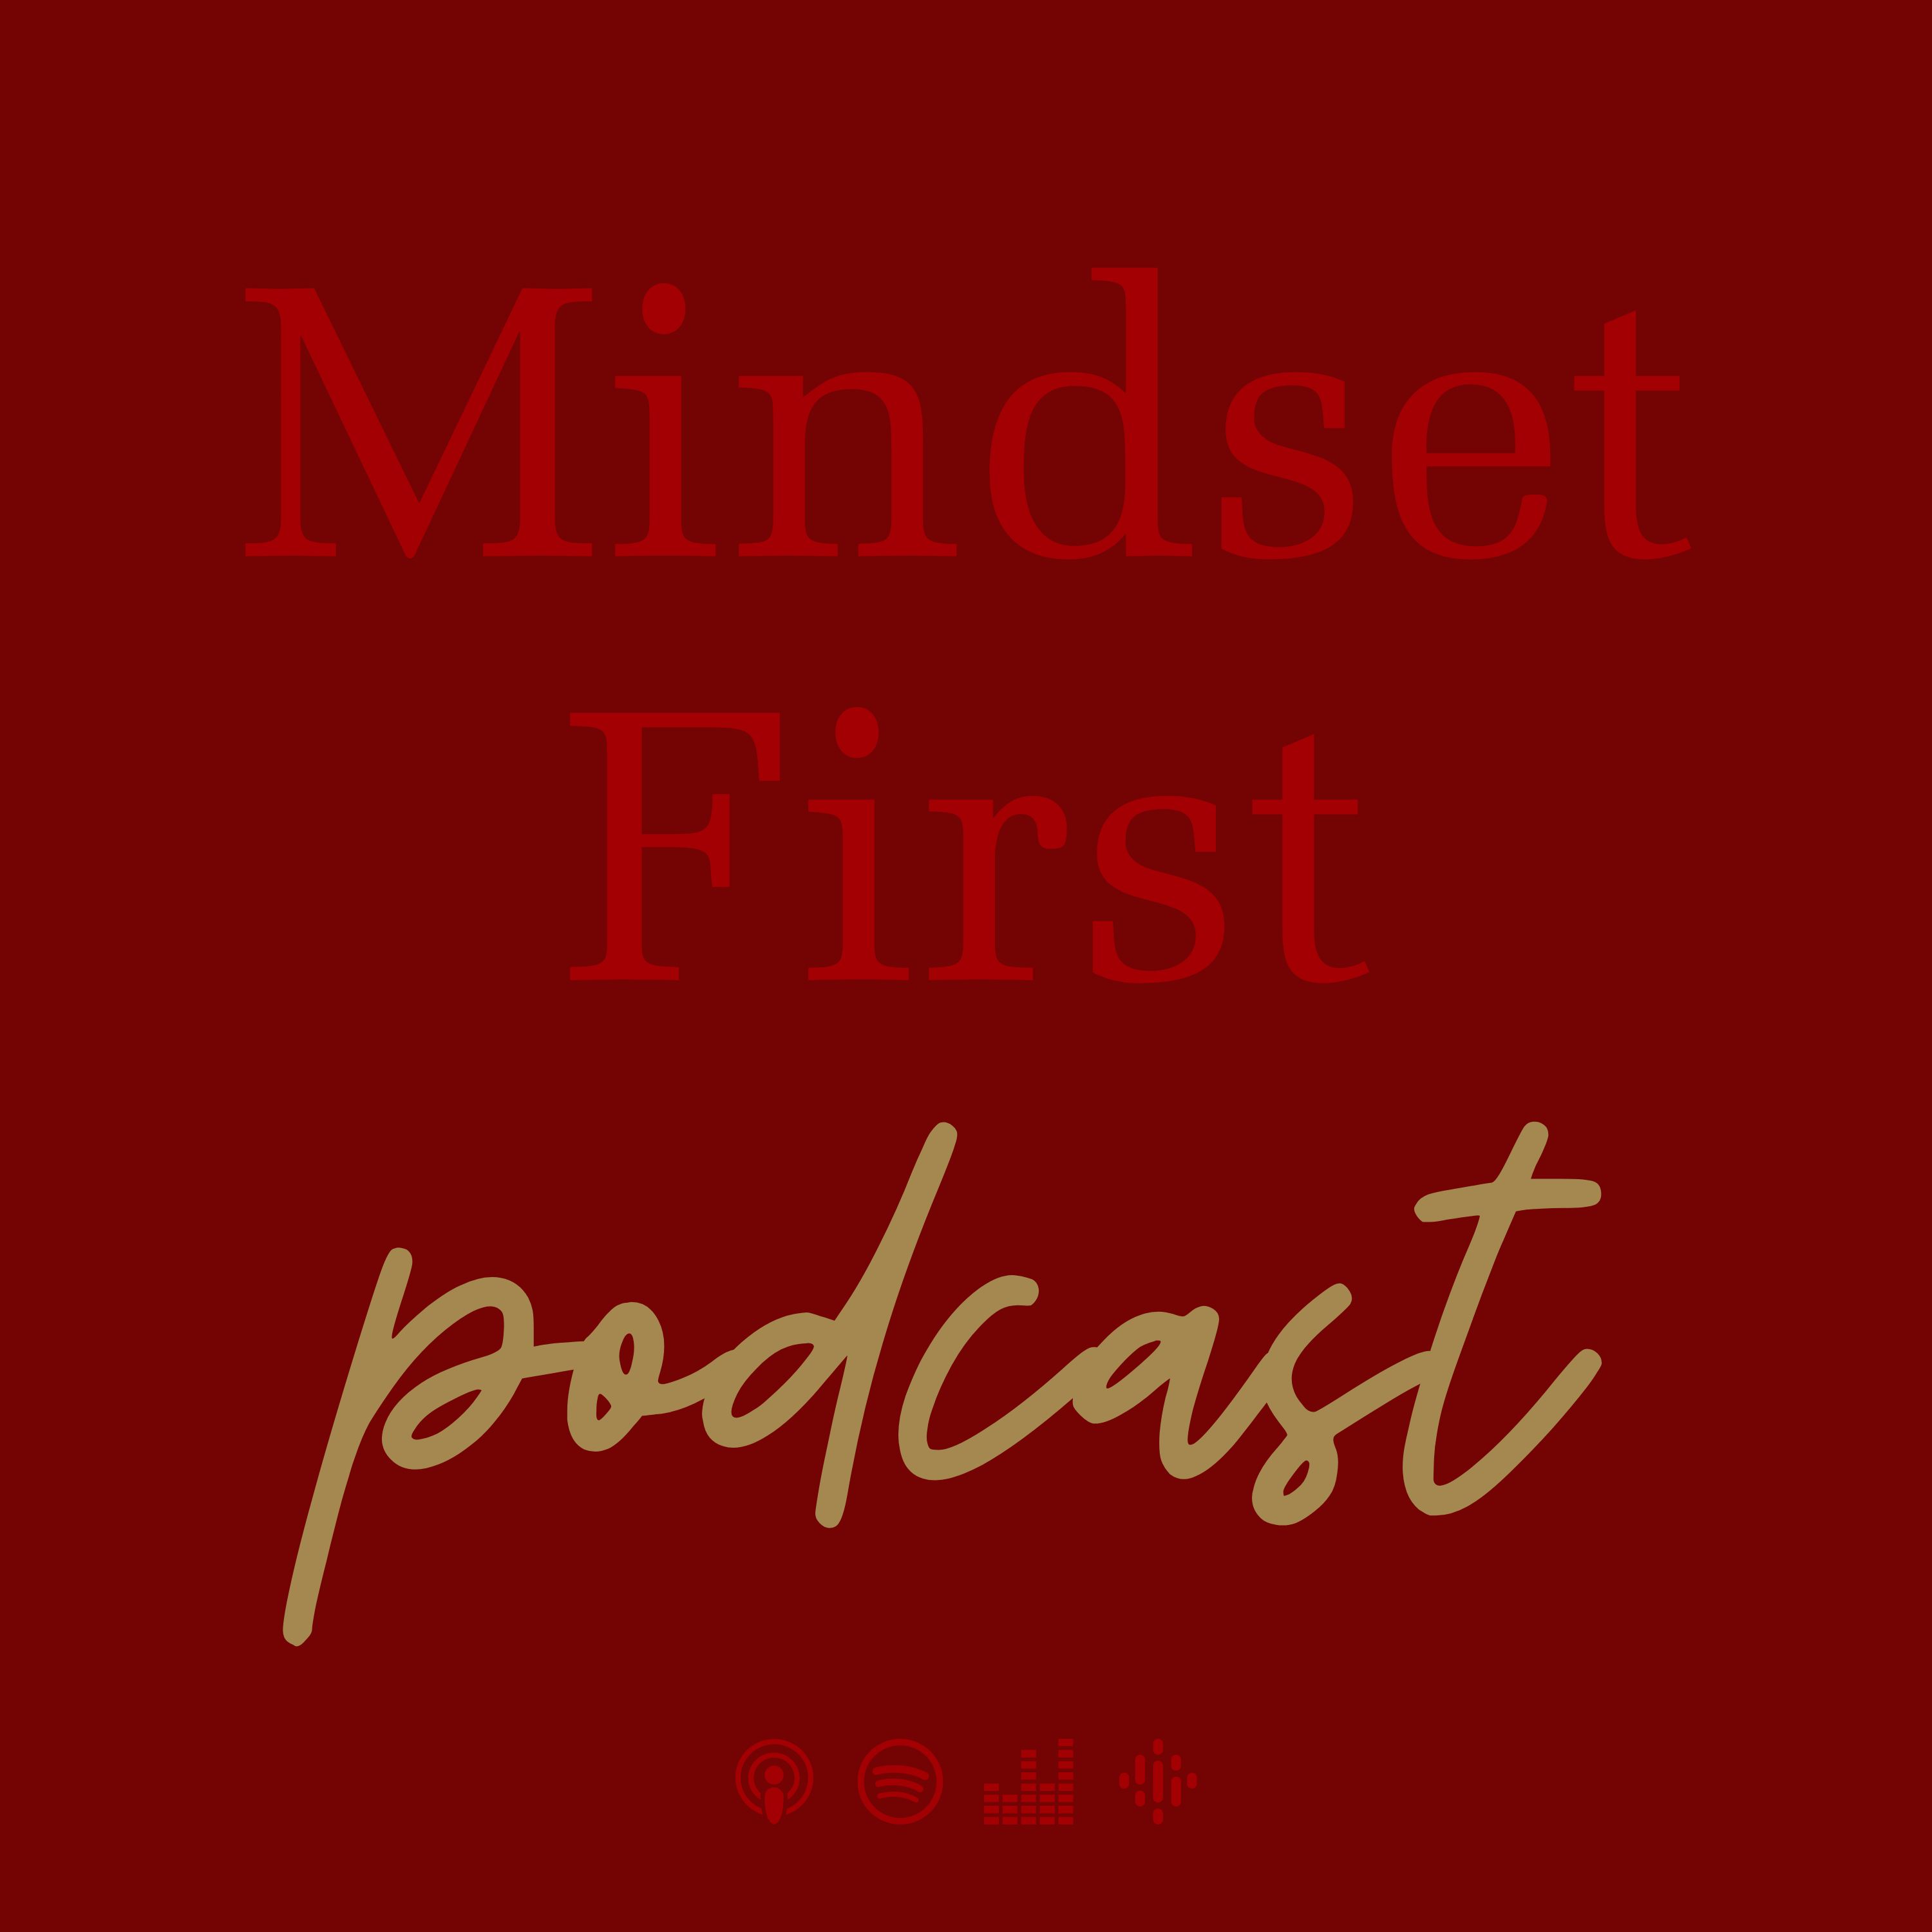 Mindset First - Der Podcast, der inspiriert und motiviert